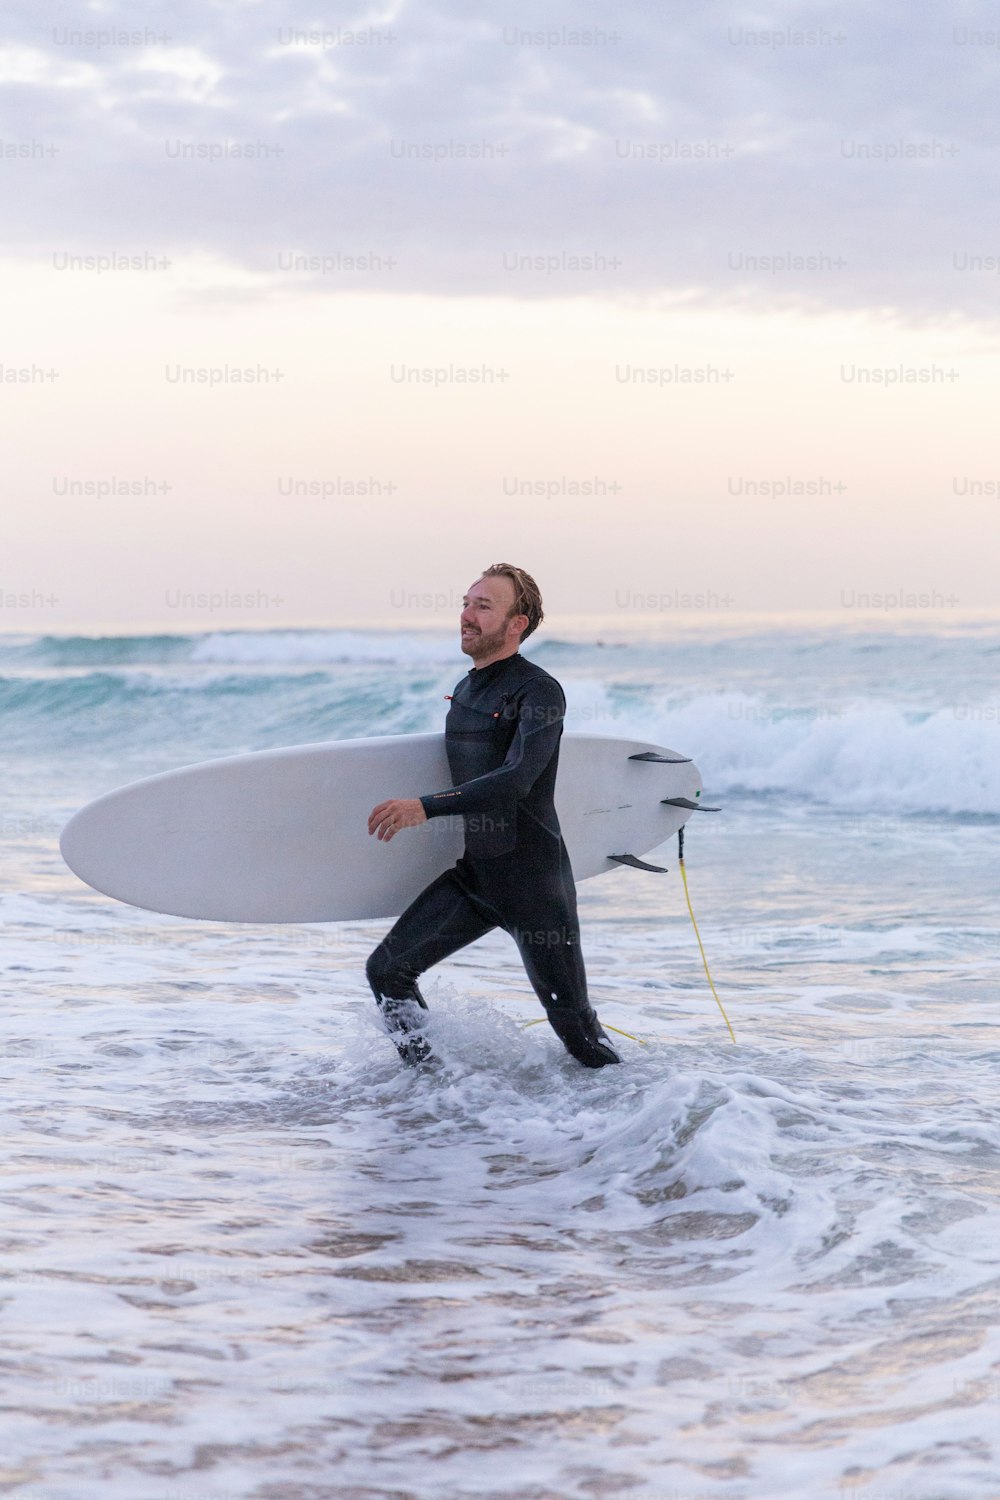 잠수복을 �입은 남자가 서핑보드를 바다로 들고 있다